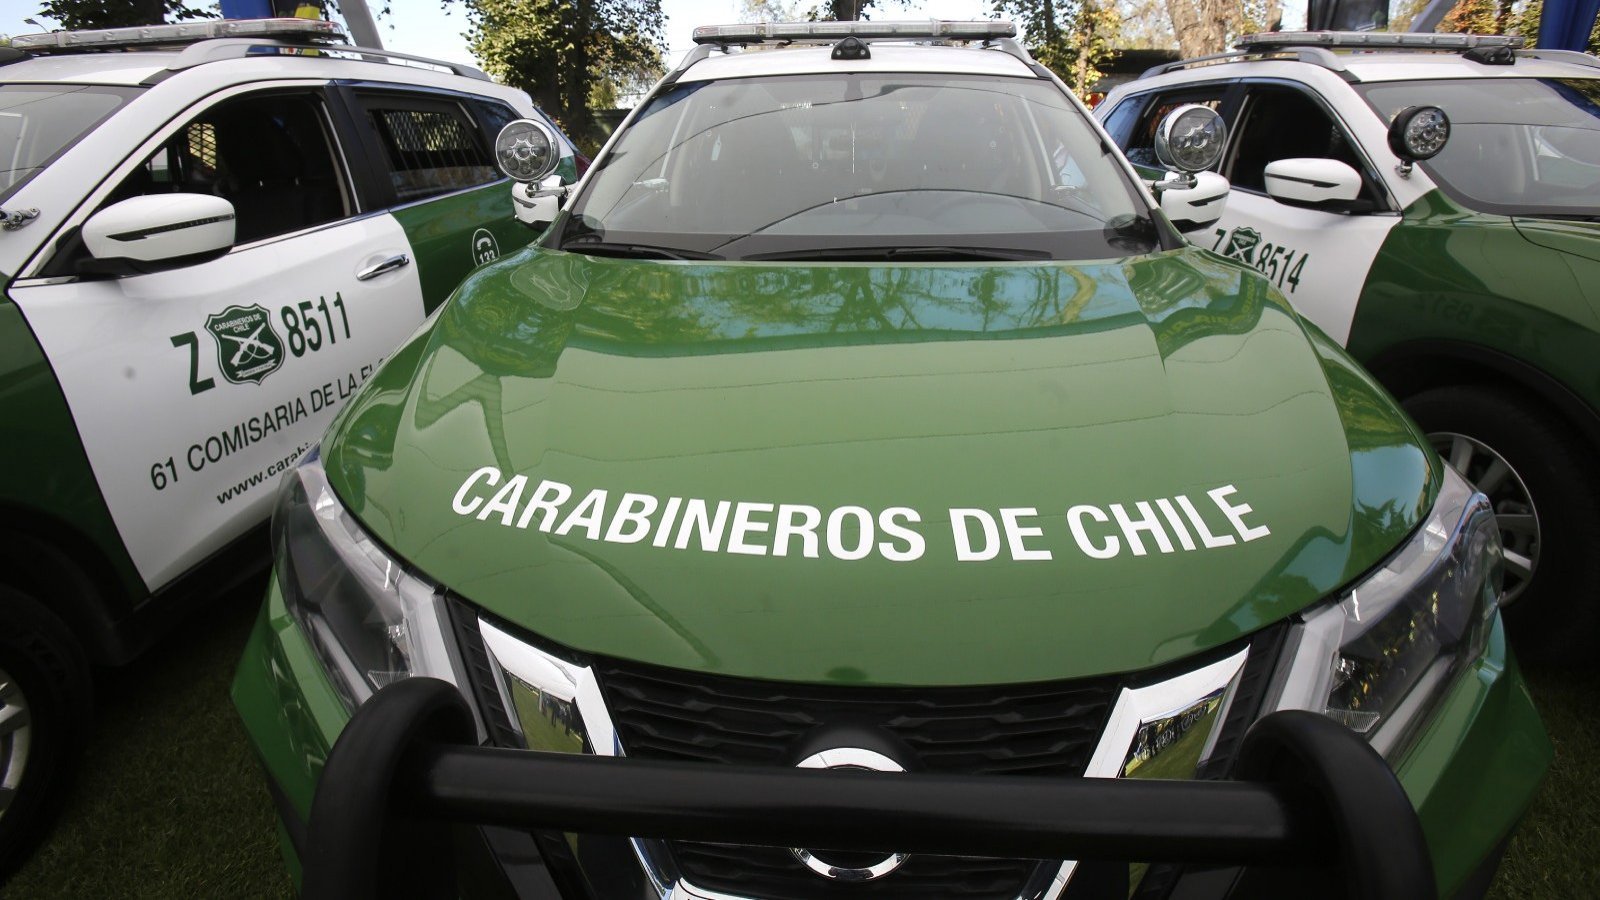 Auto de Carabineros de Chile